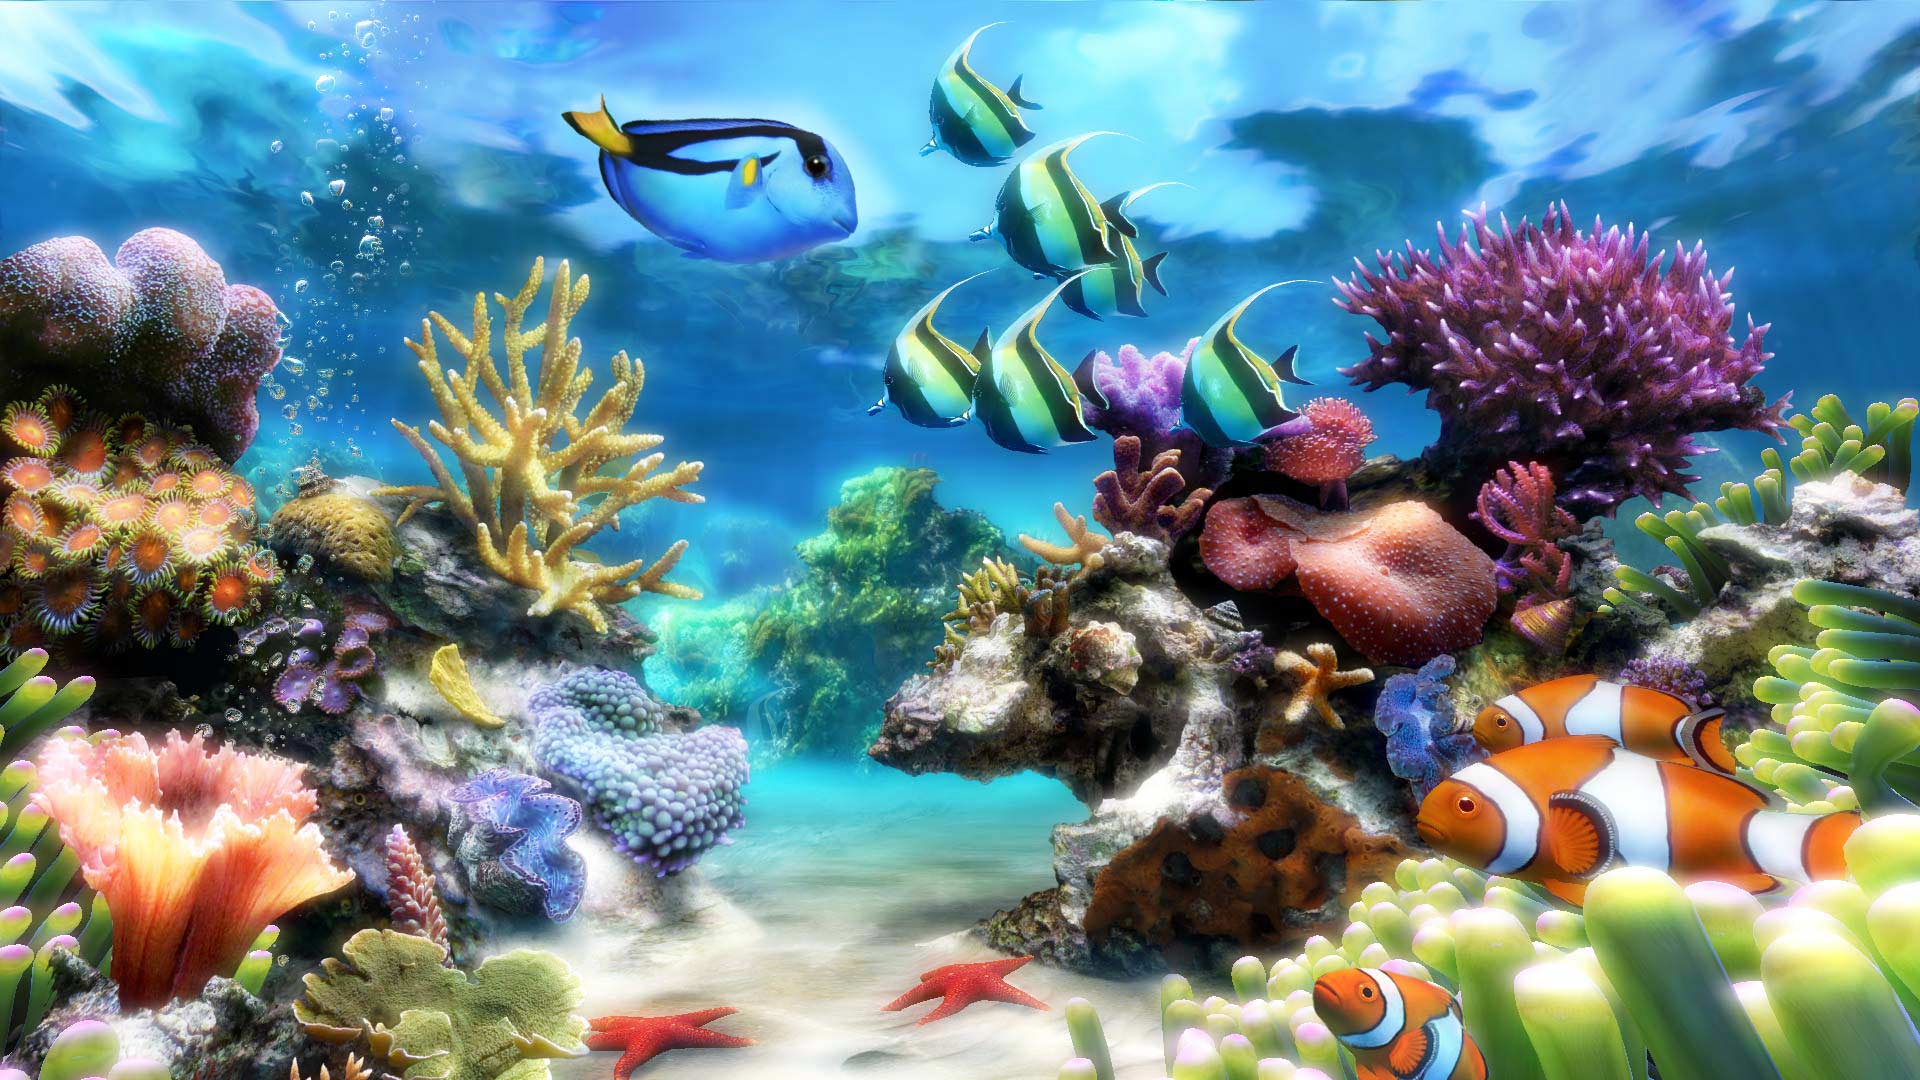 Aquarium Desktop Wallpapers - Top Free Aquarium Desktop Backgrounds